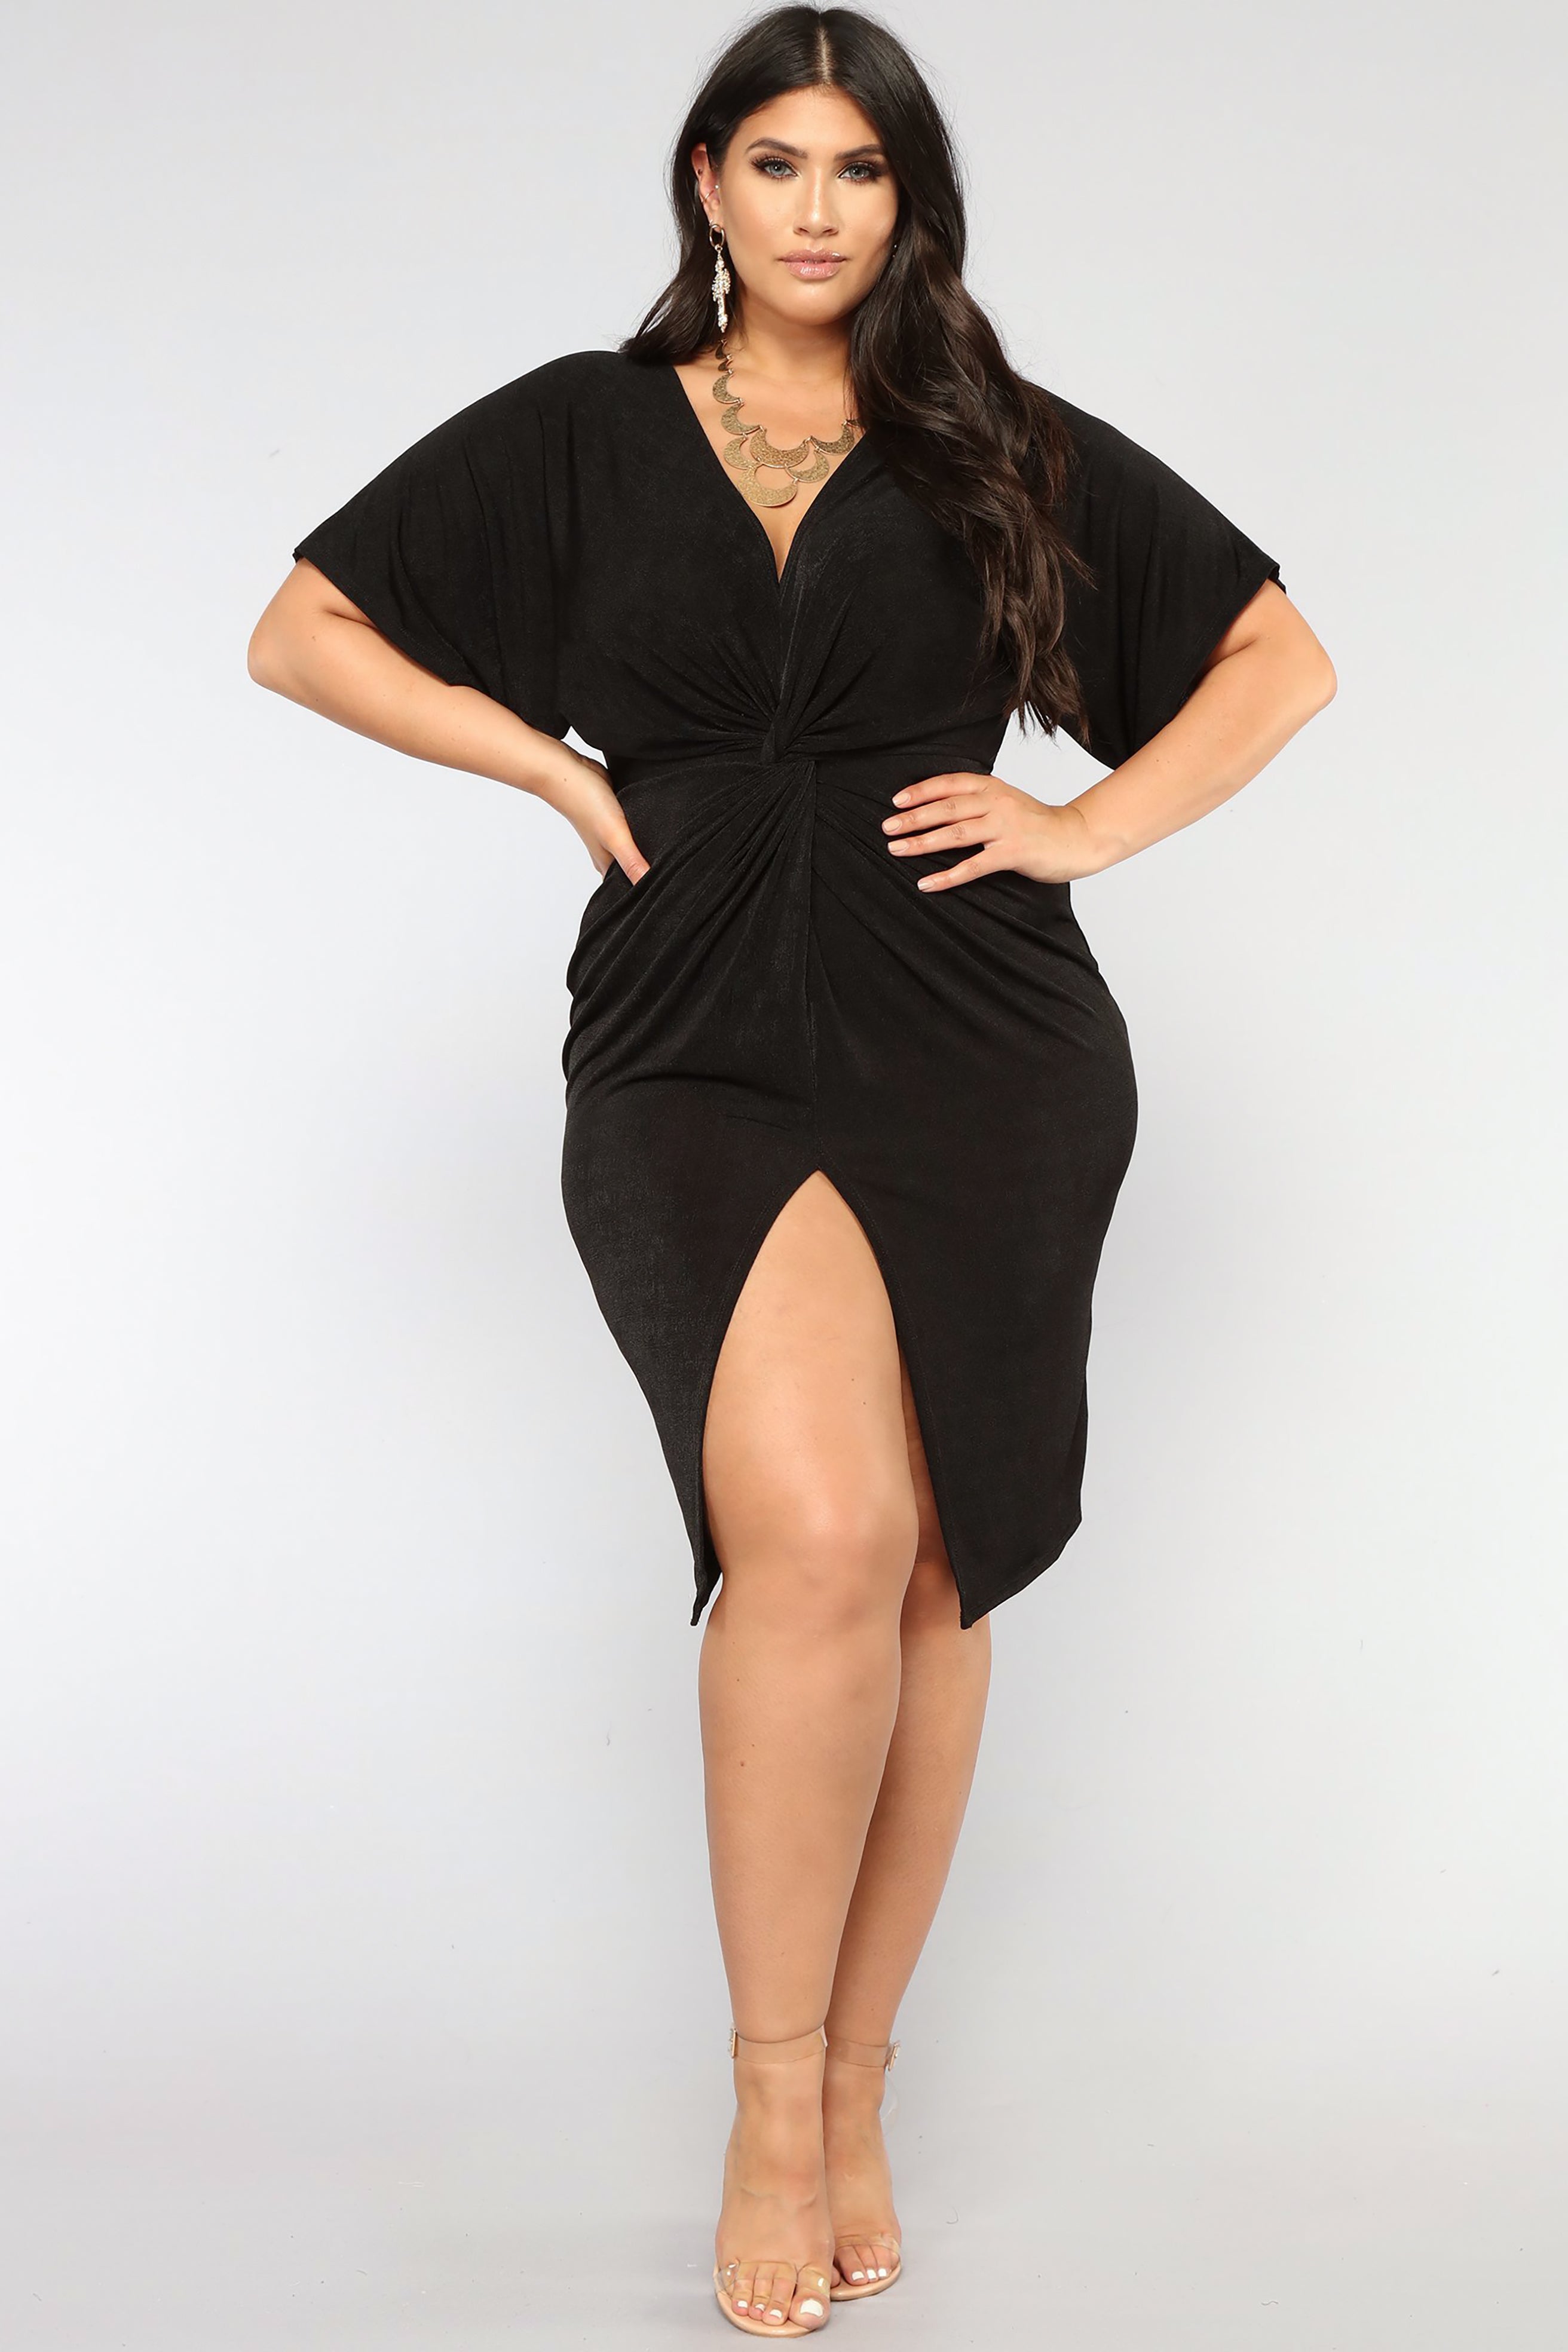 fashion nova plus size black dress